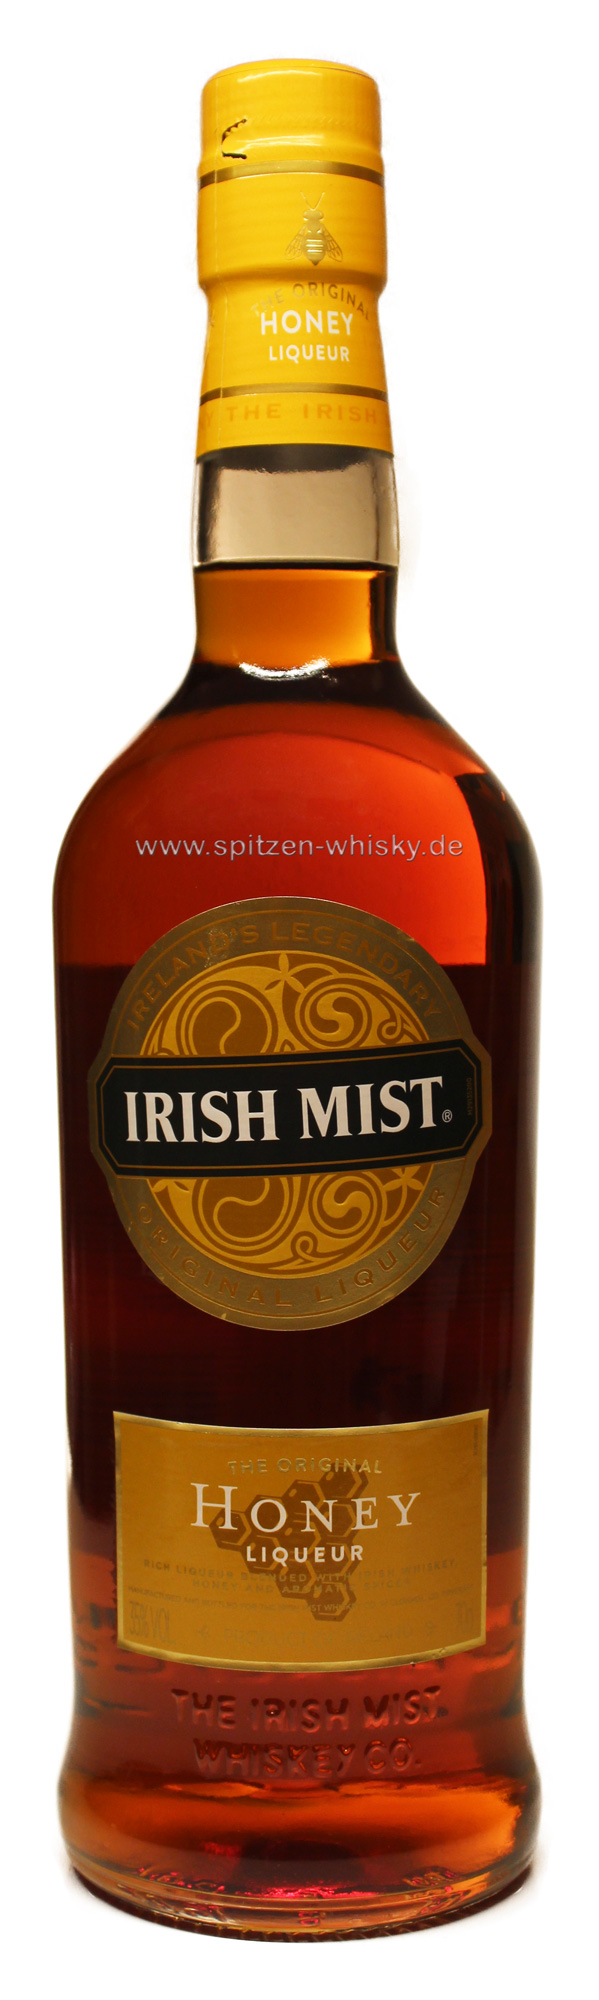 Spitzen-Whisky.de Irland Preisen Single für Mist Irish der 35% zu 0,7l | Irish | Whisky | Whisky-Shop Mist Malt günstigen